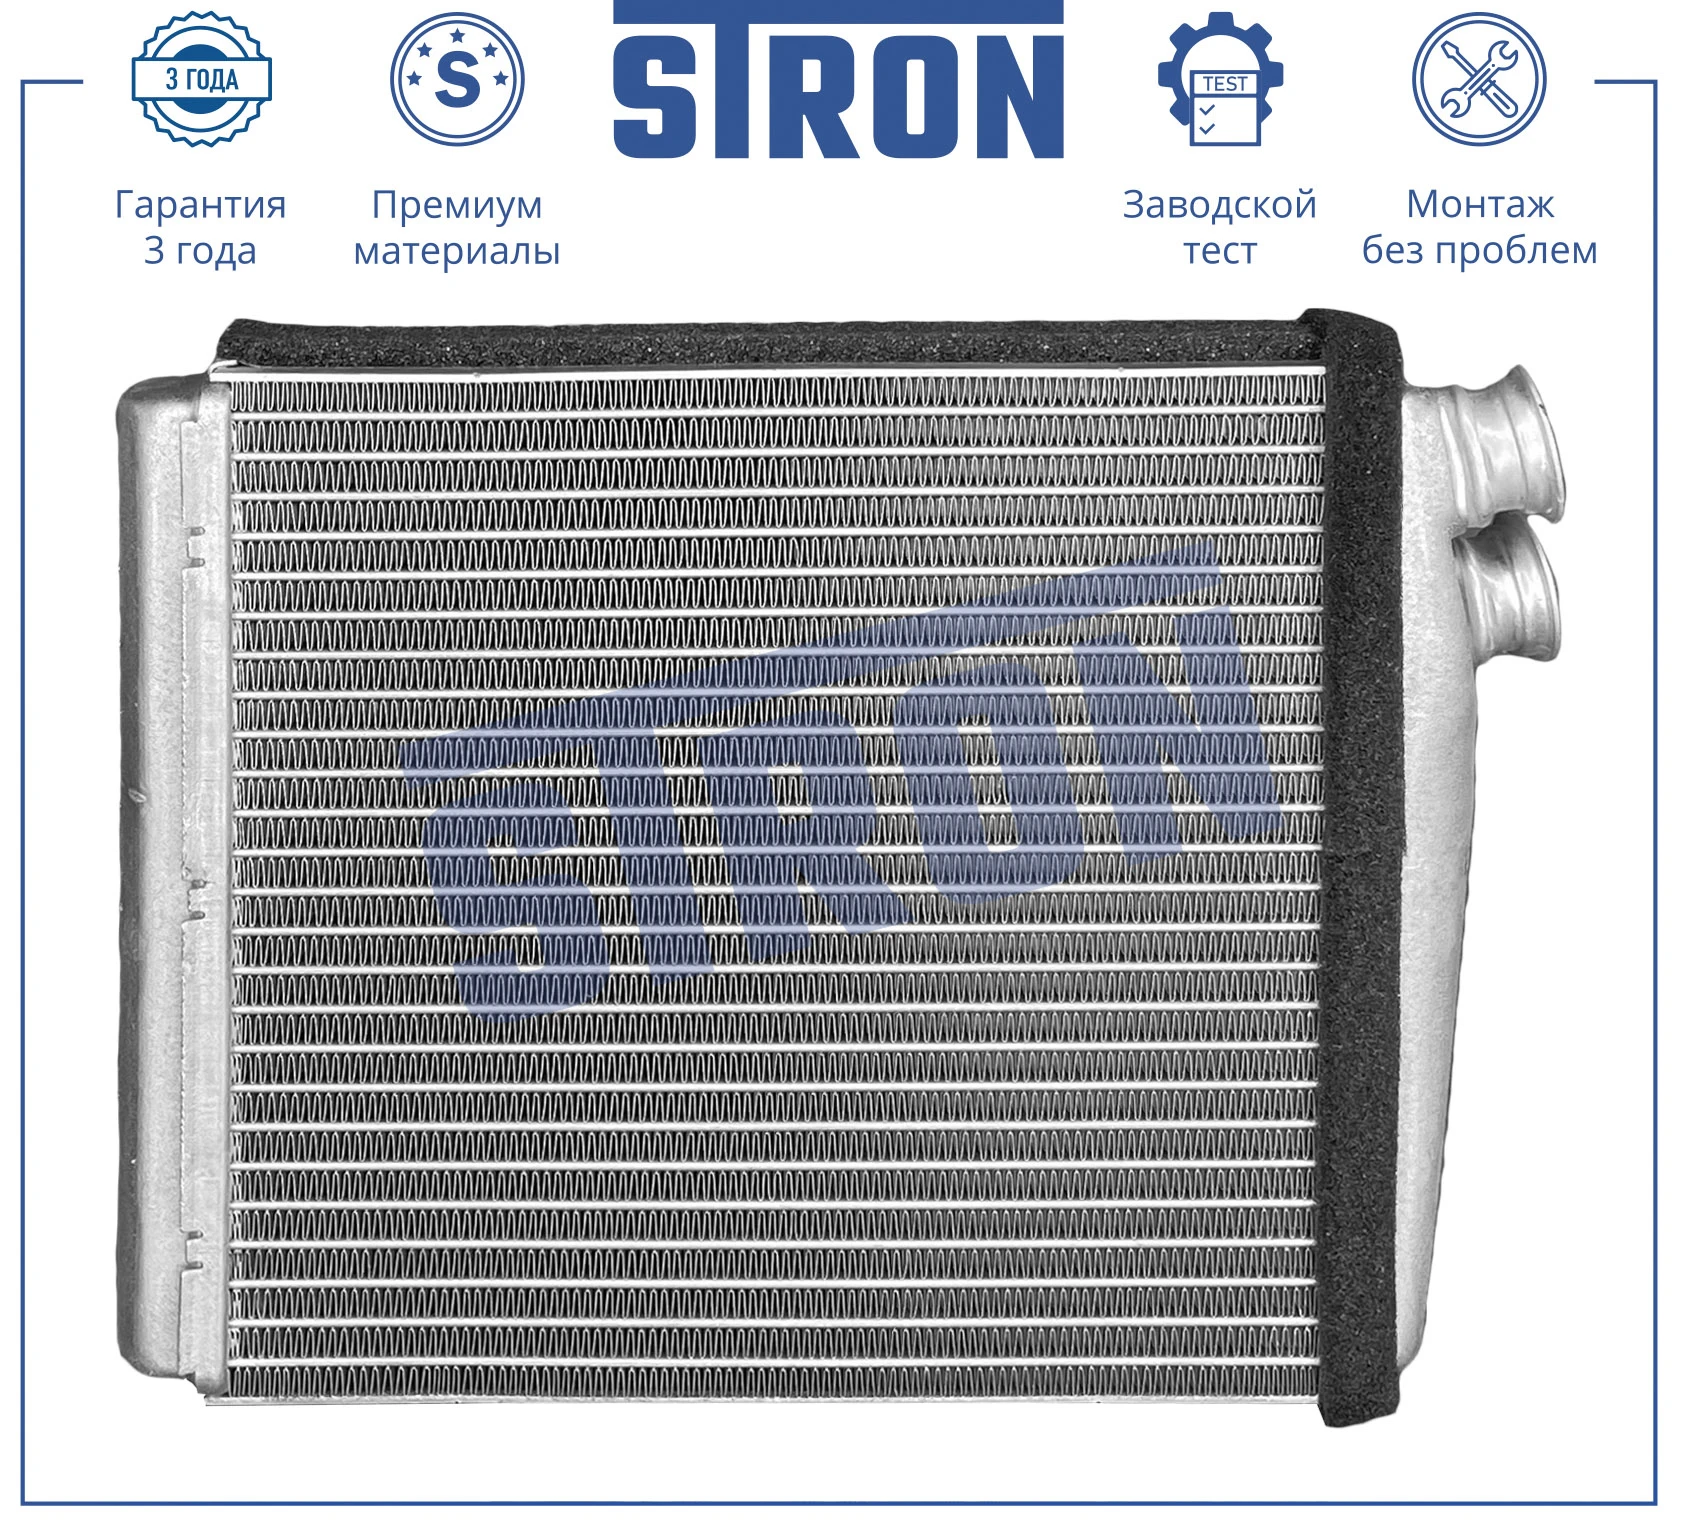 STH0043 STRON Радиатор отопителя (гарантия 3 года, увеличенный ресурс) (фото 1)